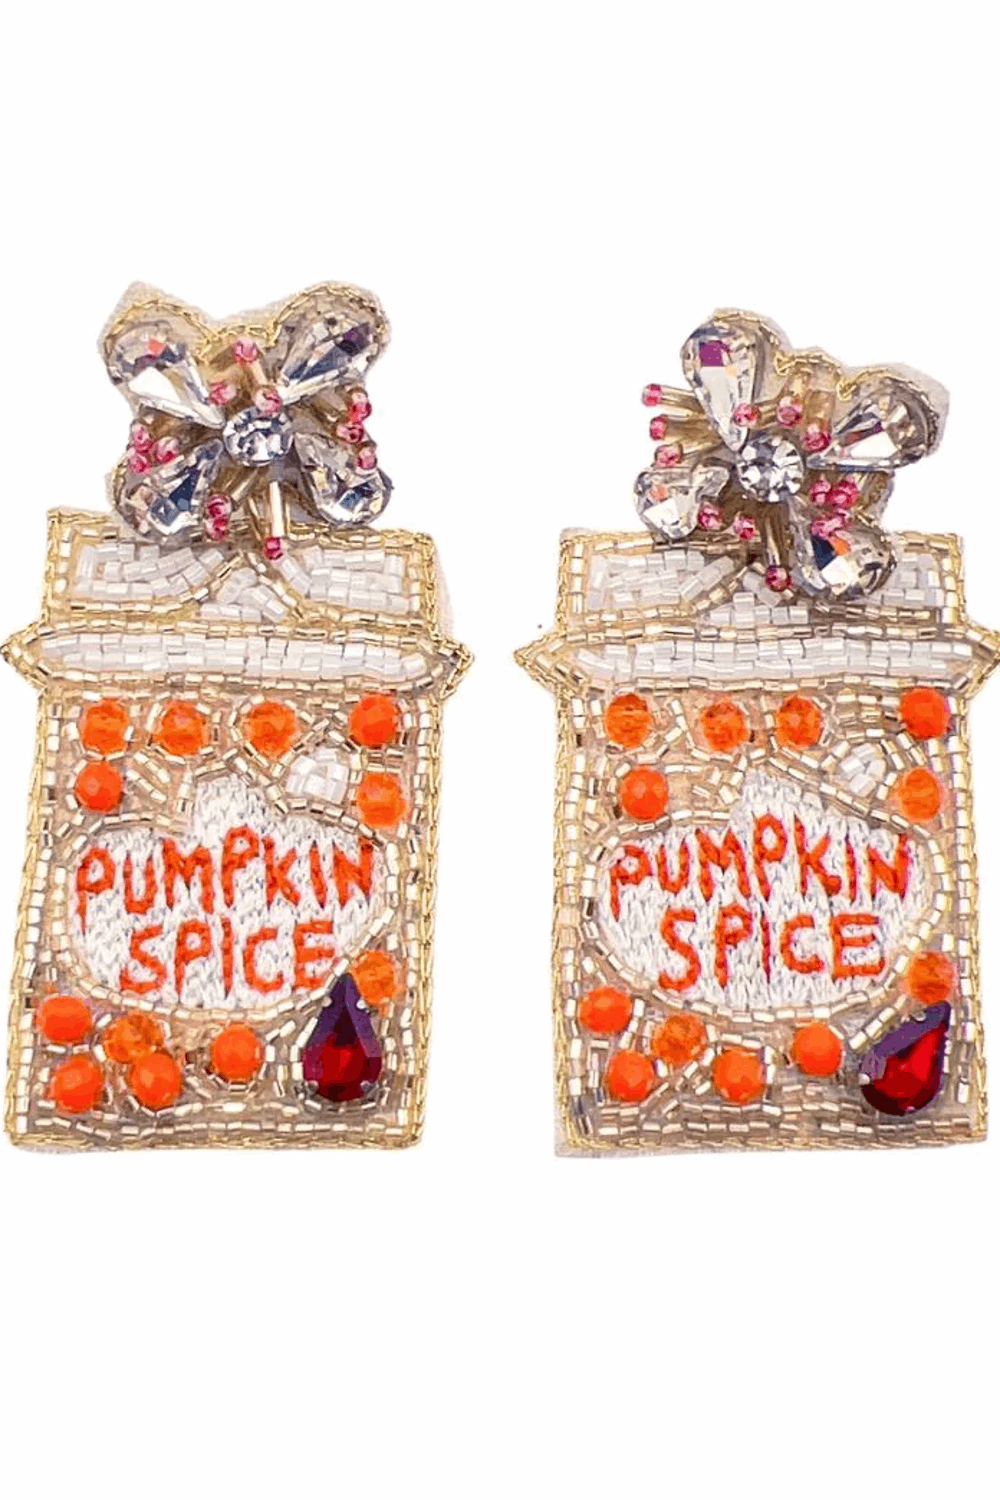 SALE-Pumpkin Spice Earrings